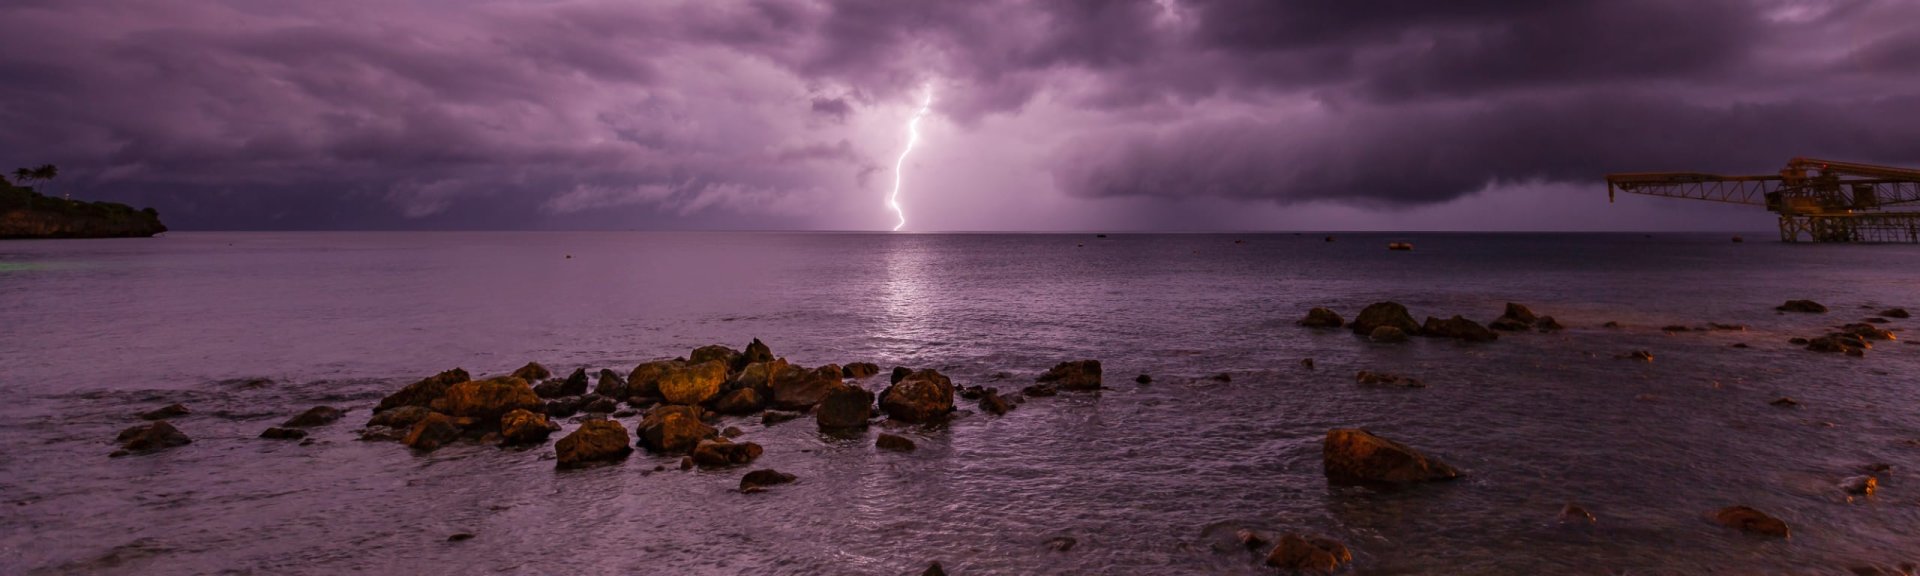 Lightning over Flying Fish Cove. Photo: [Wondrous World Images](https://www.wondrousworldimages.com.au)